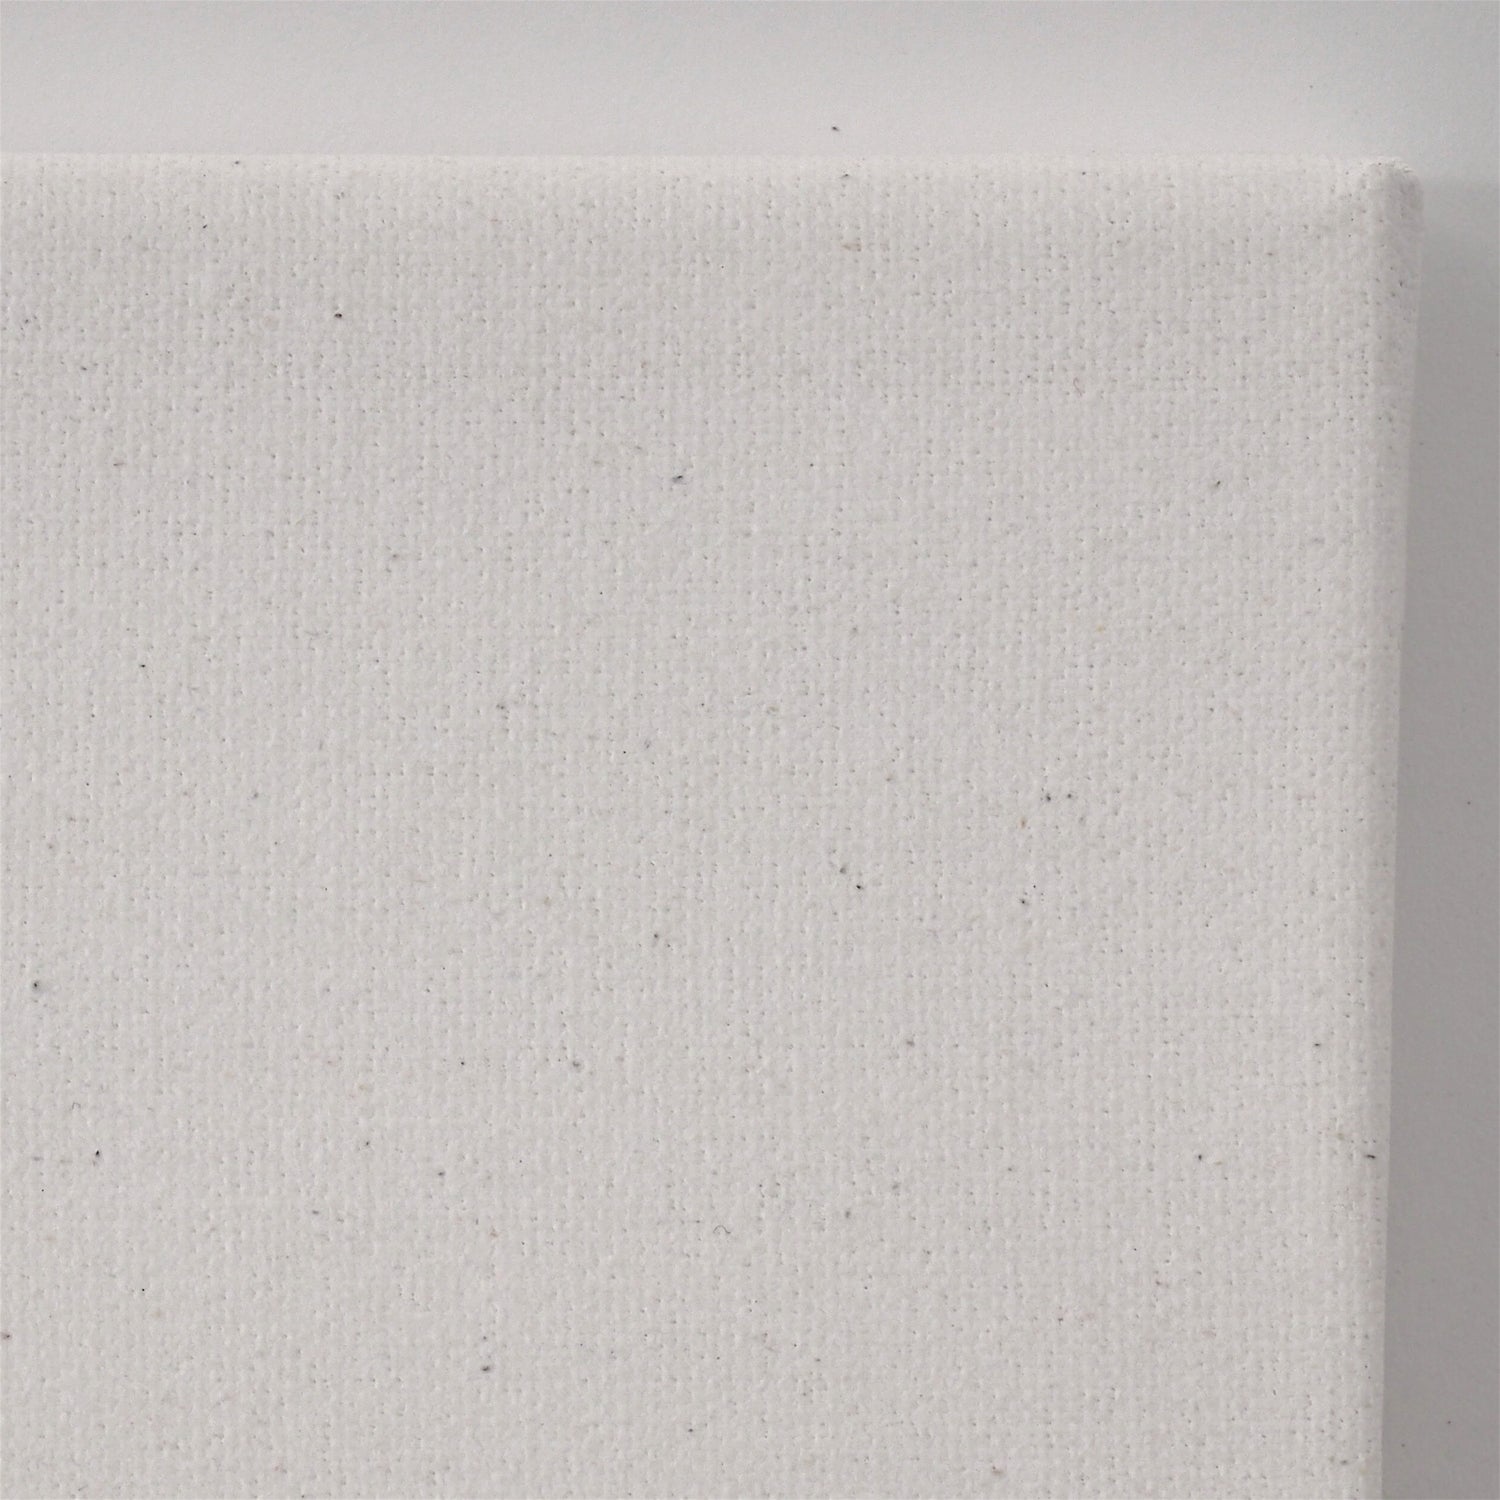 2 B.K. BASIC Leinwände | 50x150 cm | auf Keilrahmen, 100% Baumwolle